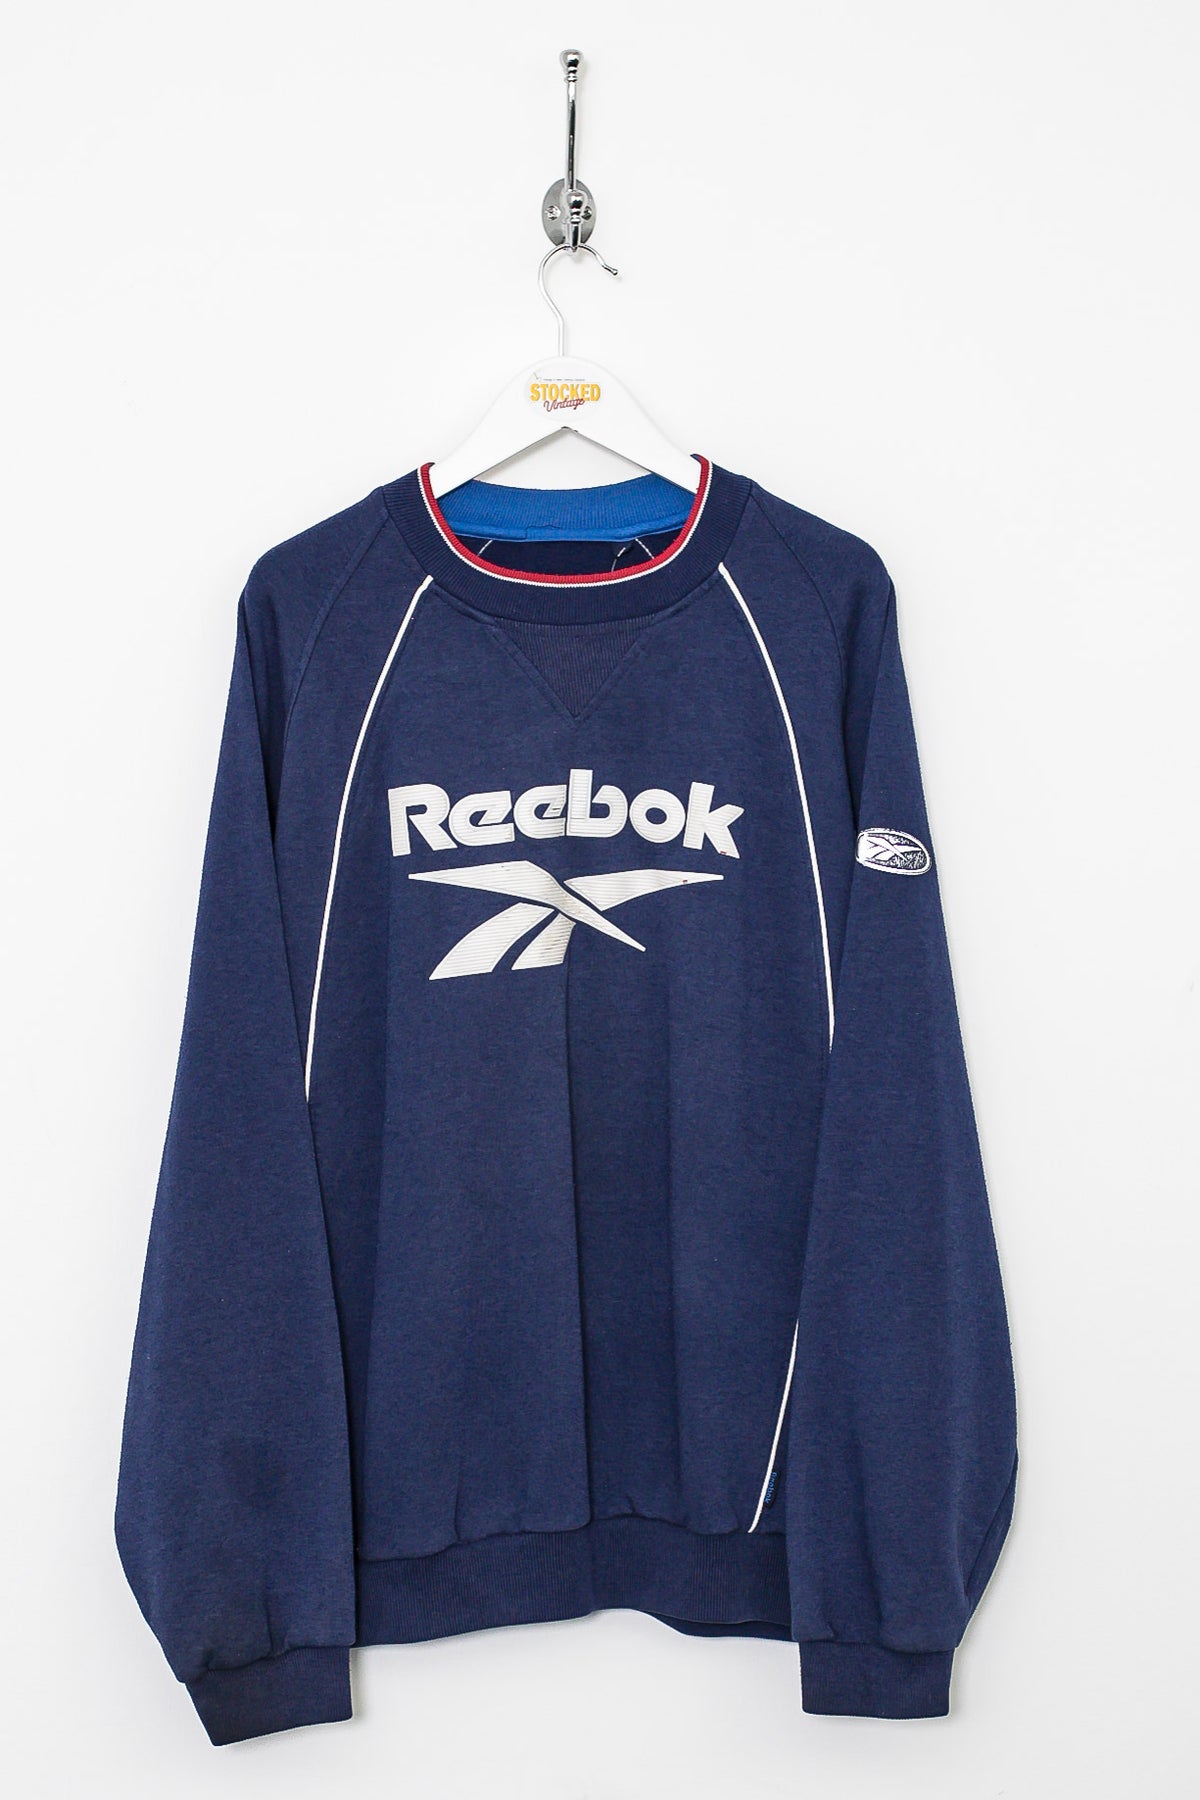 00s Reebok Sweatshirt – Stocked Vintage